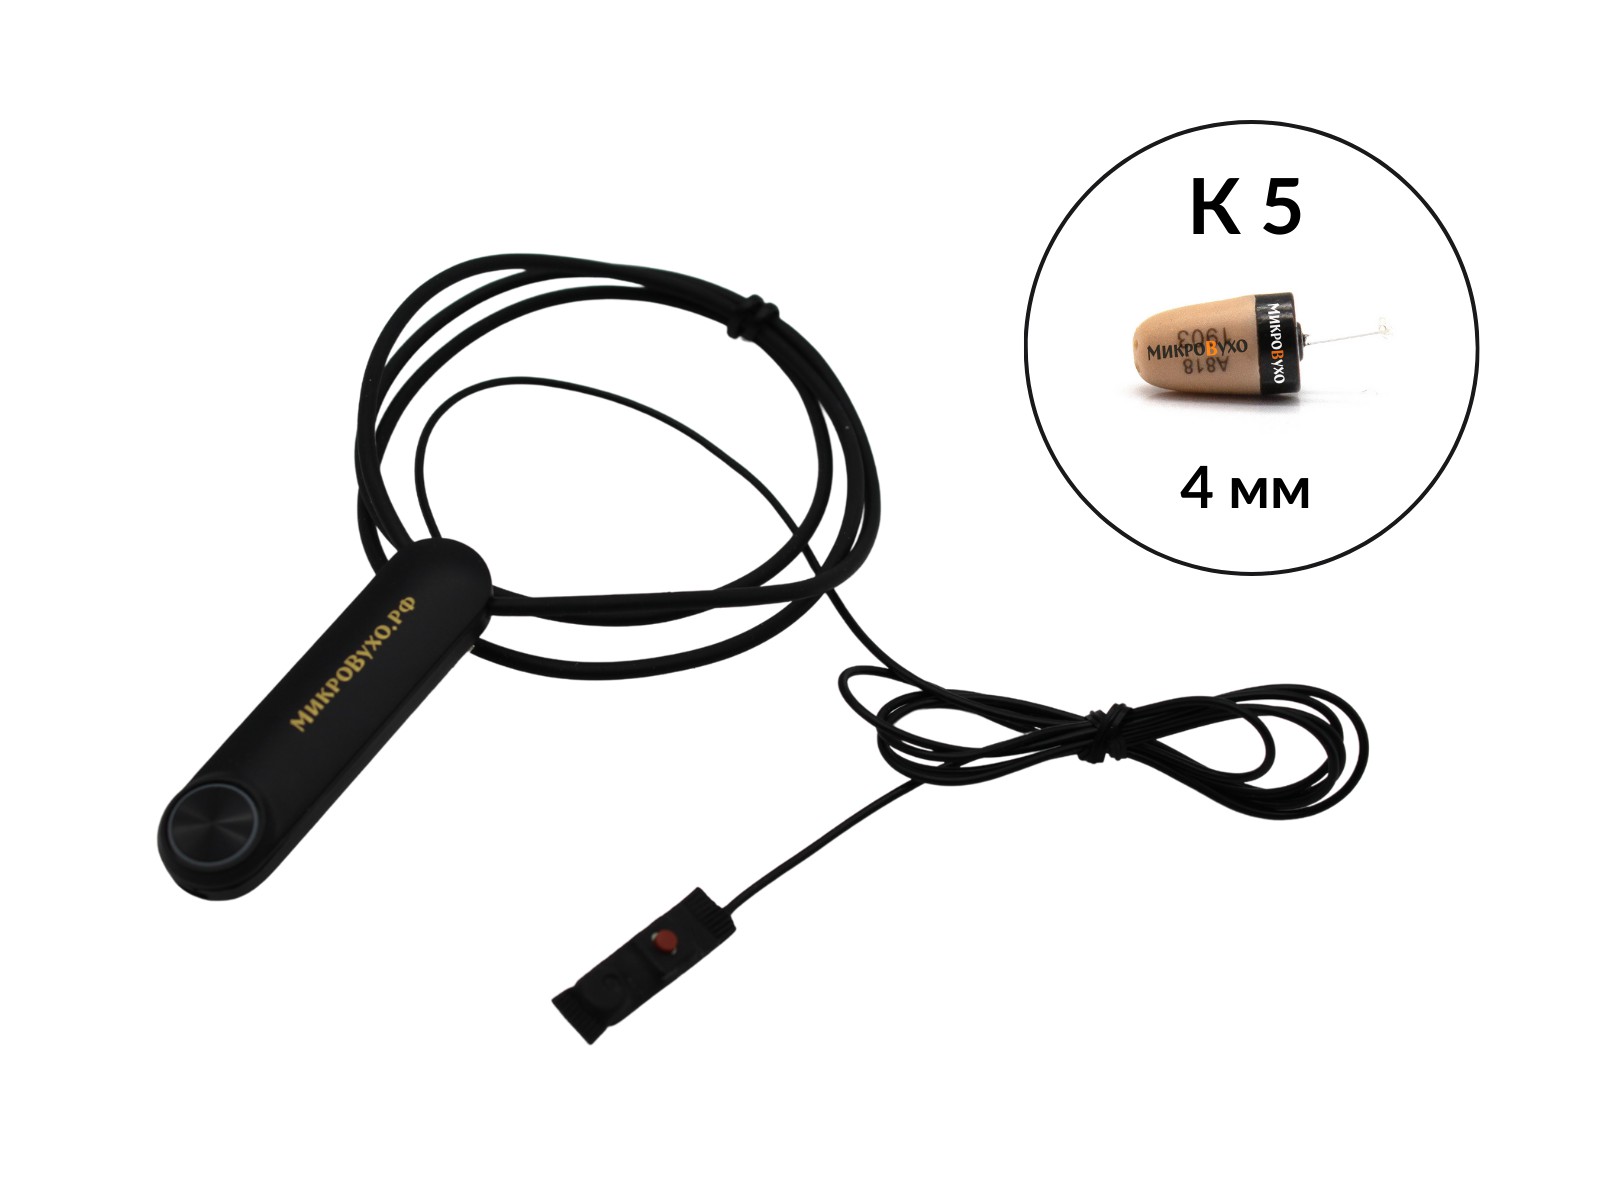 Гарнитура Bluetooth Standard с капсульным микронаушником K5 4 мм - изображение 2